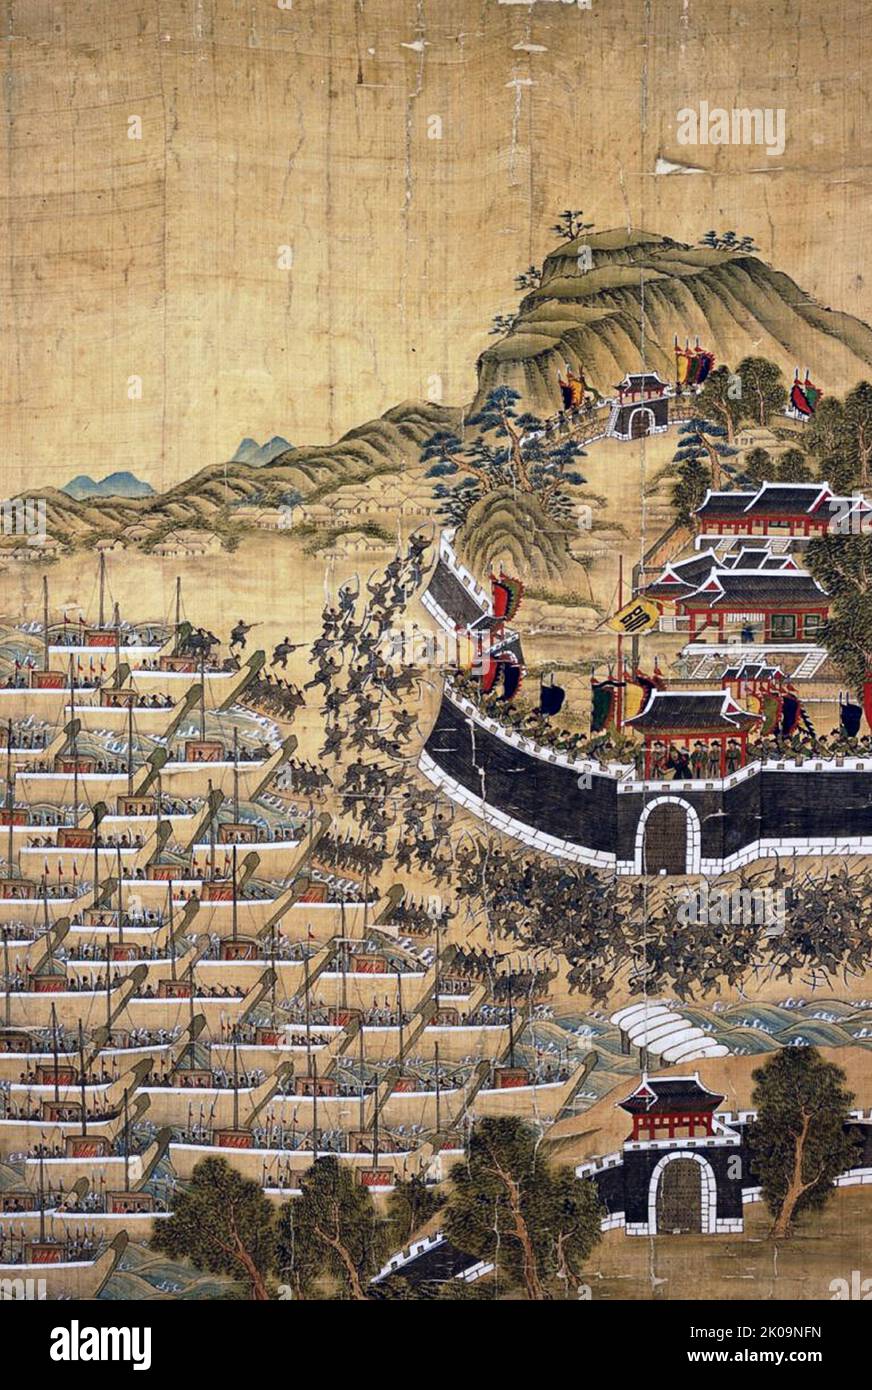 La Battaglia di Busan del 1592 (Battaglia di Busanpo o Battaglia di Busan Bay), un bombardamento navale di navi giapponesi ancorate a Busan. Yi Sun-sin è riuscito a distruggere oltre 100 navi giapponesi e a ritirarsi con perdite minime. Fu un impegno navale che ebbe luogo il 1 settembre 1592 durante la prima fase delle invasioni giapponesi della Corea. Foto Stock